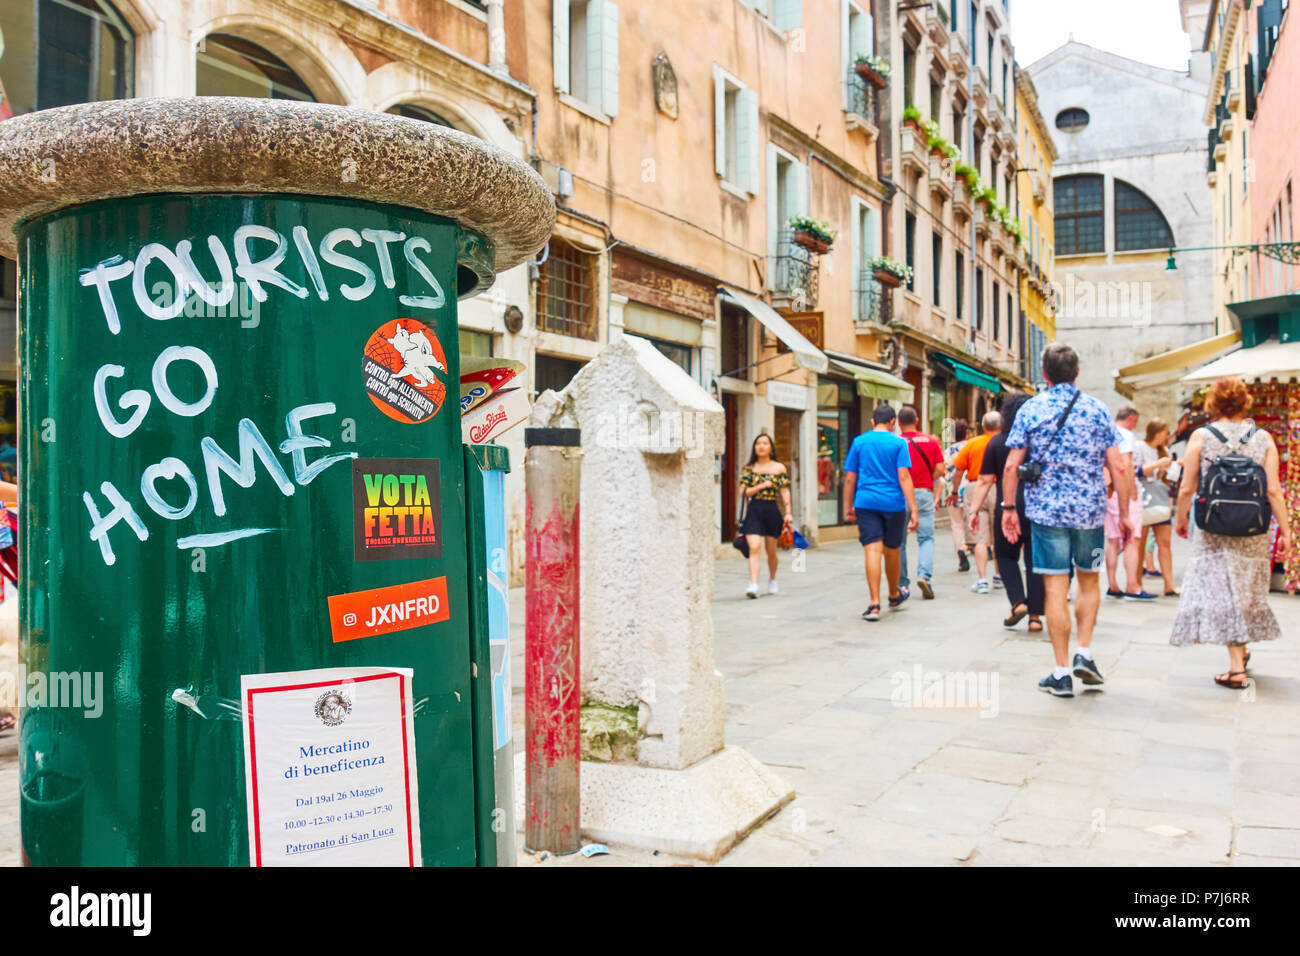 Venise, Italie - le 18 juin 2018 : 'touristes' go home graffito sur l'litterbin à Venise Banque D'Images